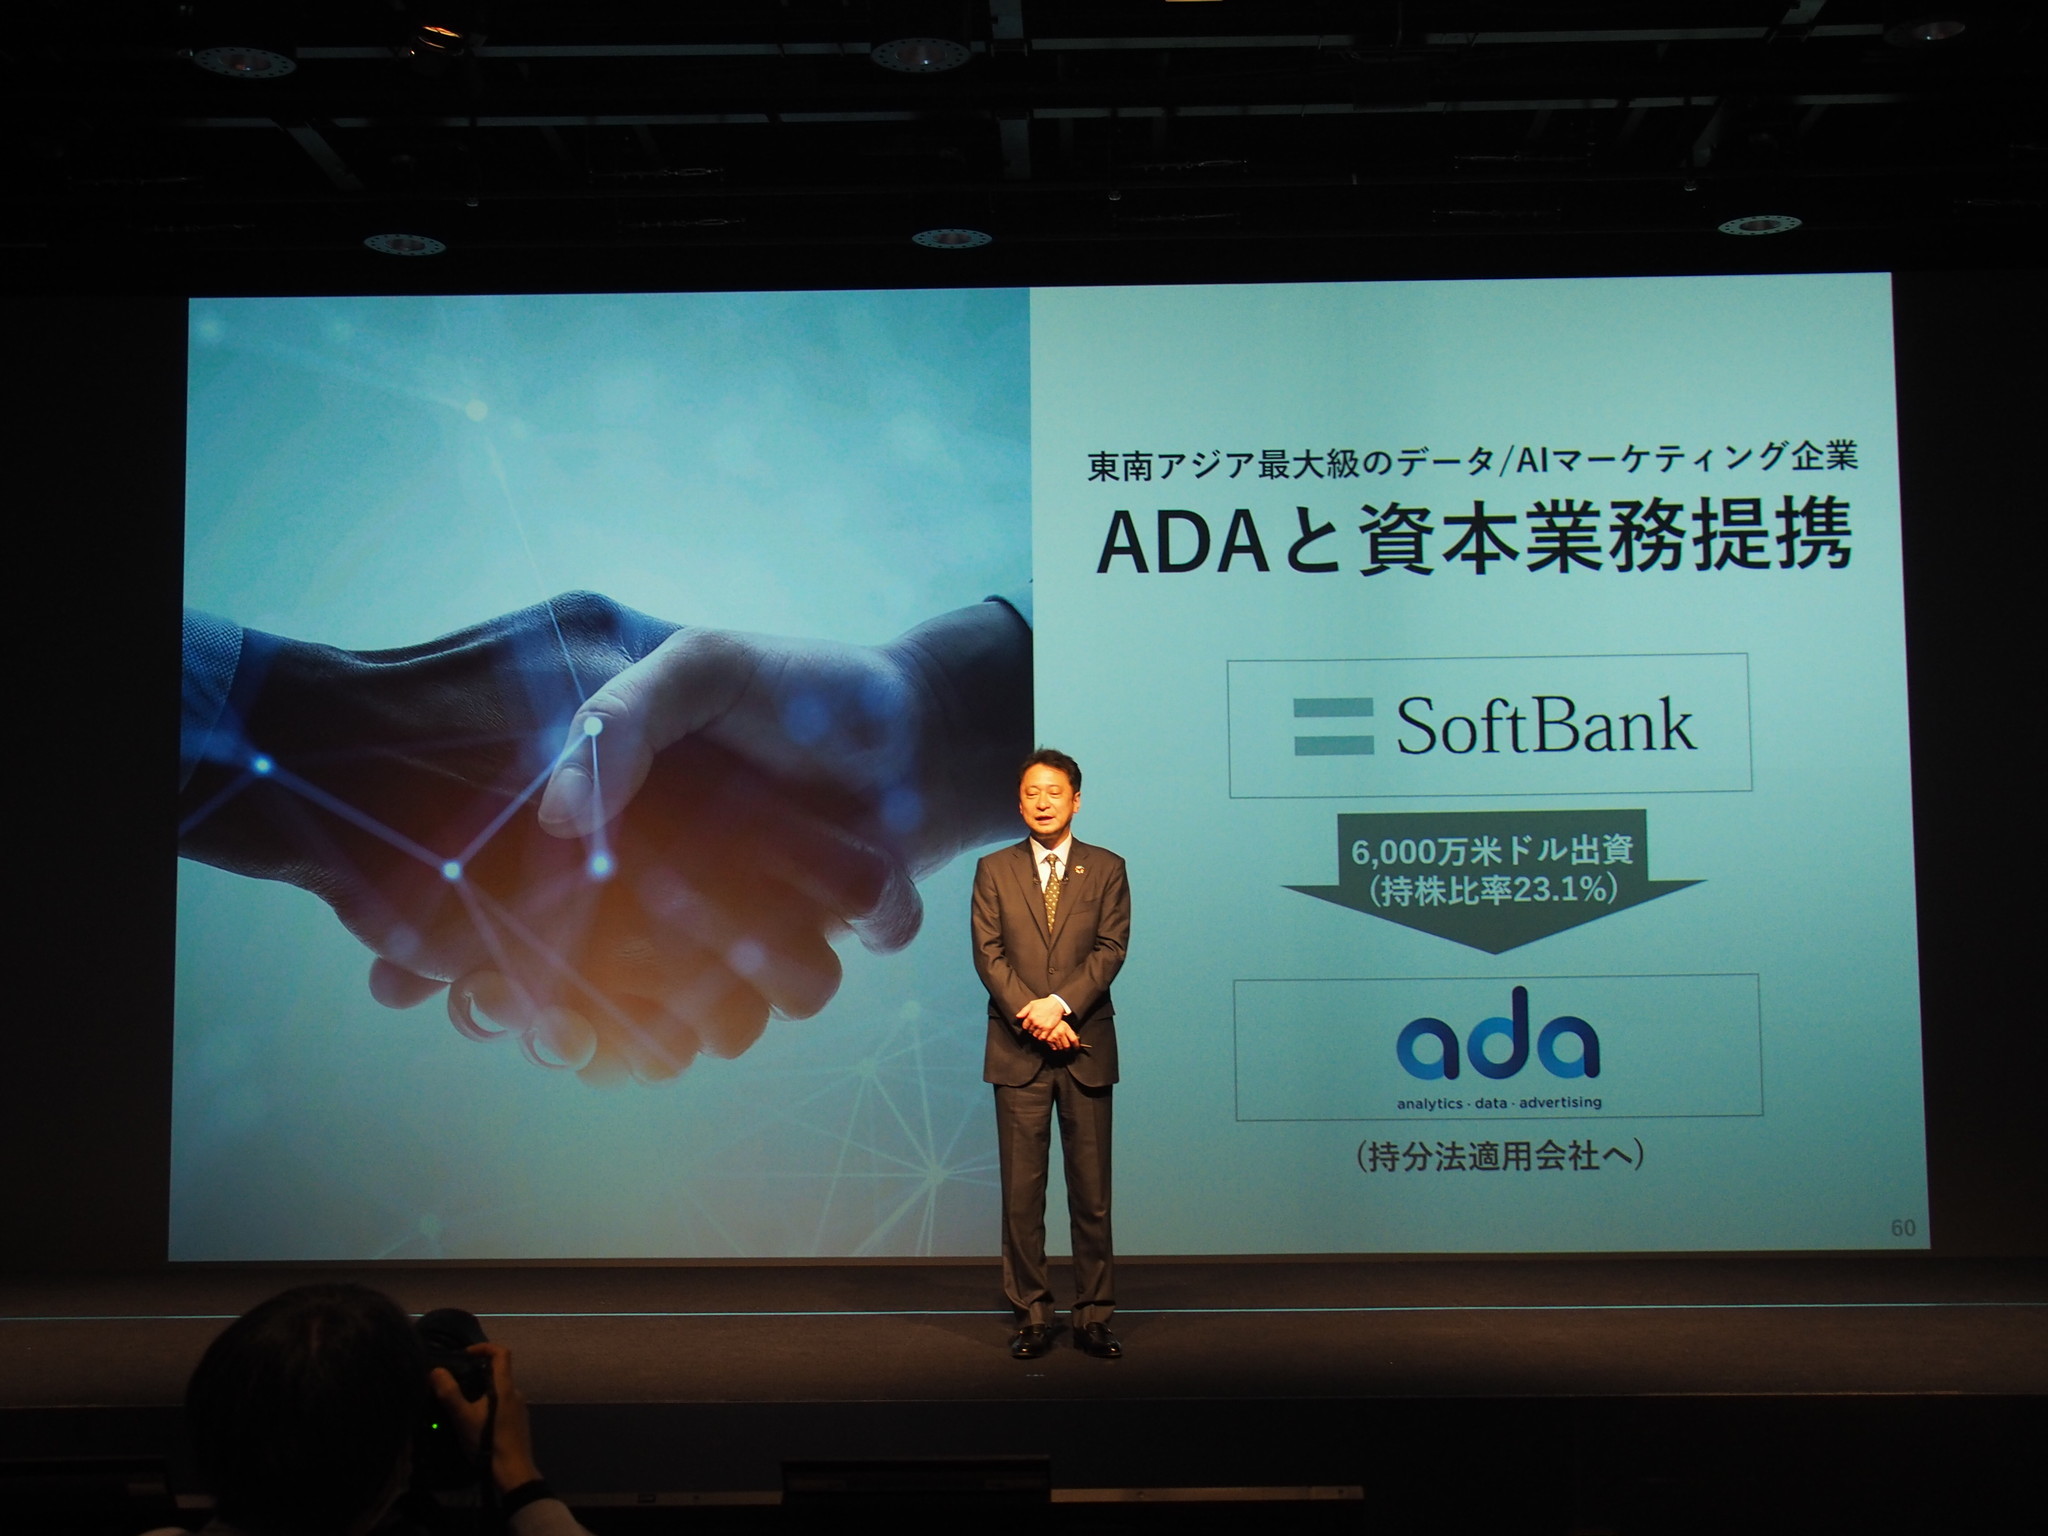 Beyond Japan戦略の第1弾として東南アジアでデジタルマーケティングを手掛けるADAへの出資が打ち出され、6000万ドルを出資するとしている